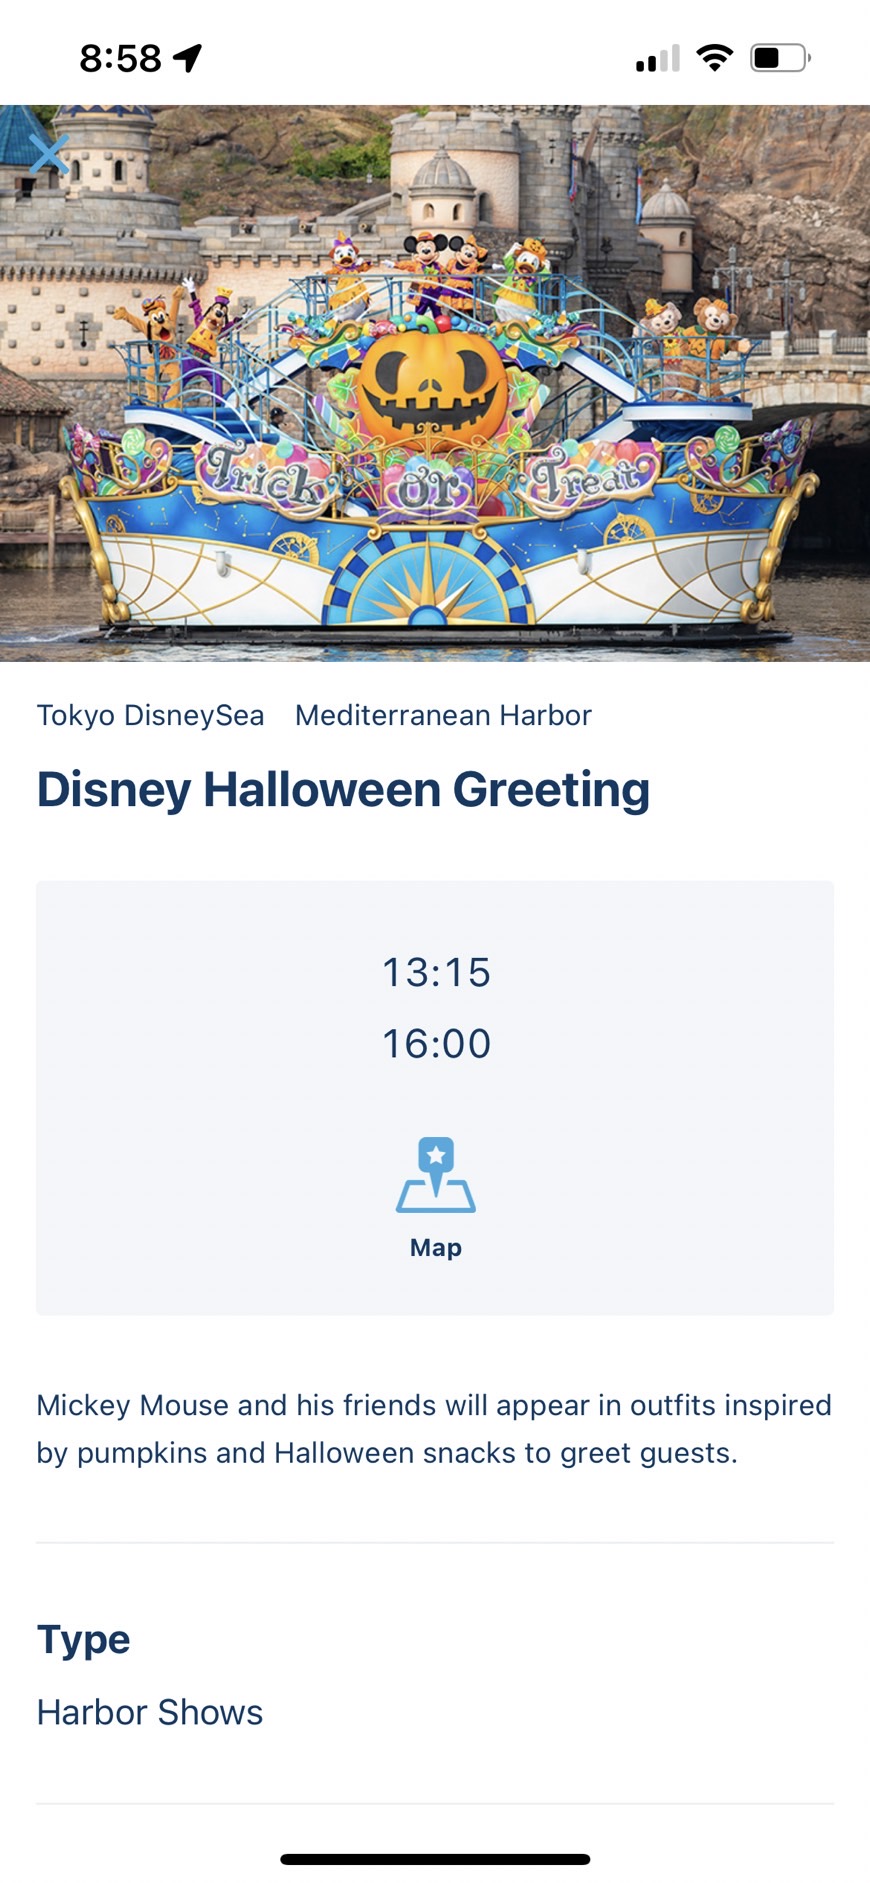 東京迪士尼樂園/陸上/海洋通用攻略，購票、排隊、實用APP及新版快速通關票券說明。